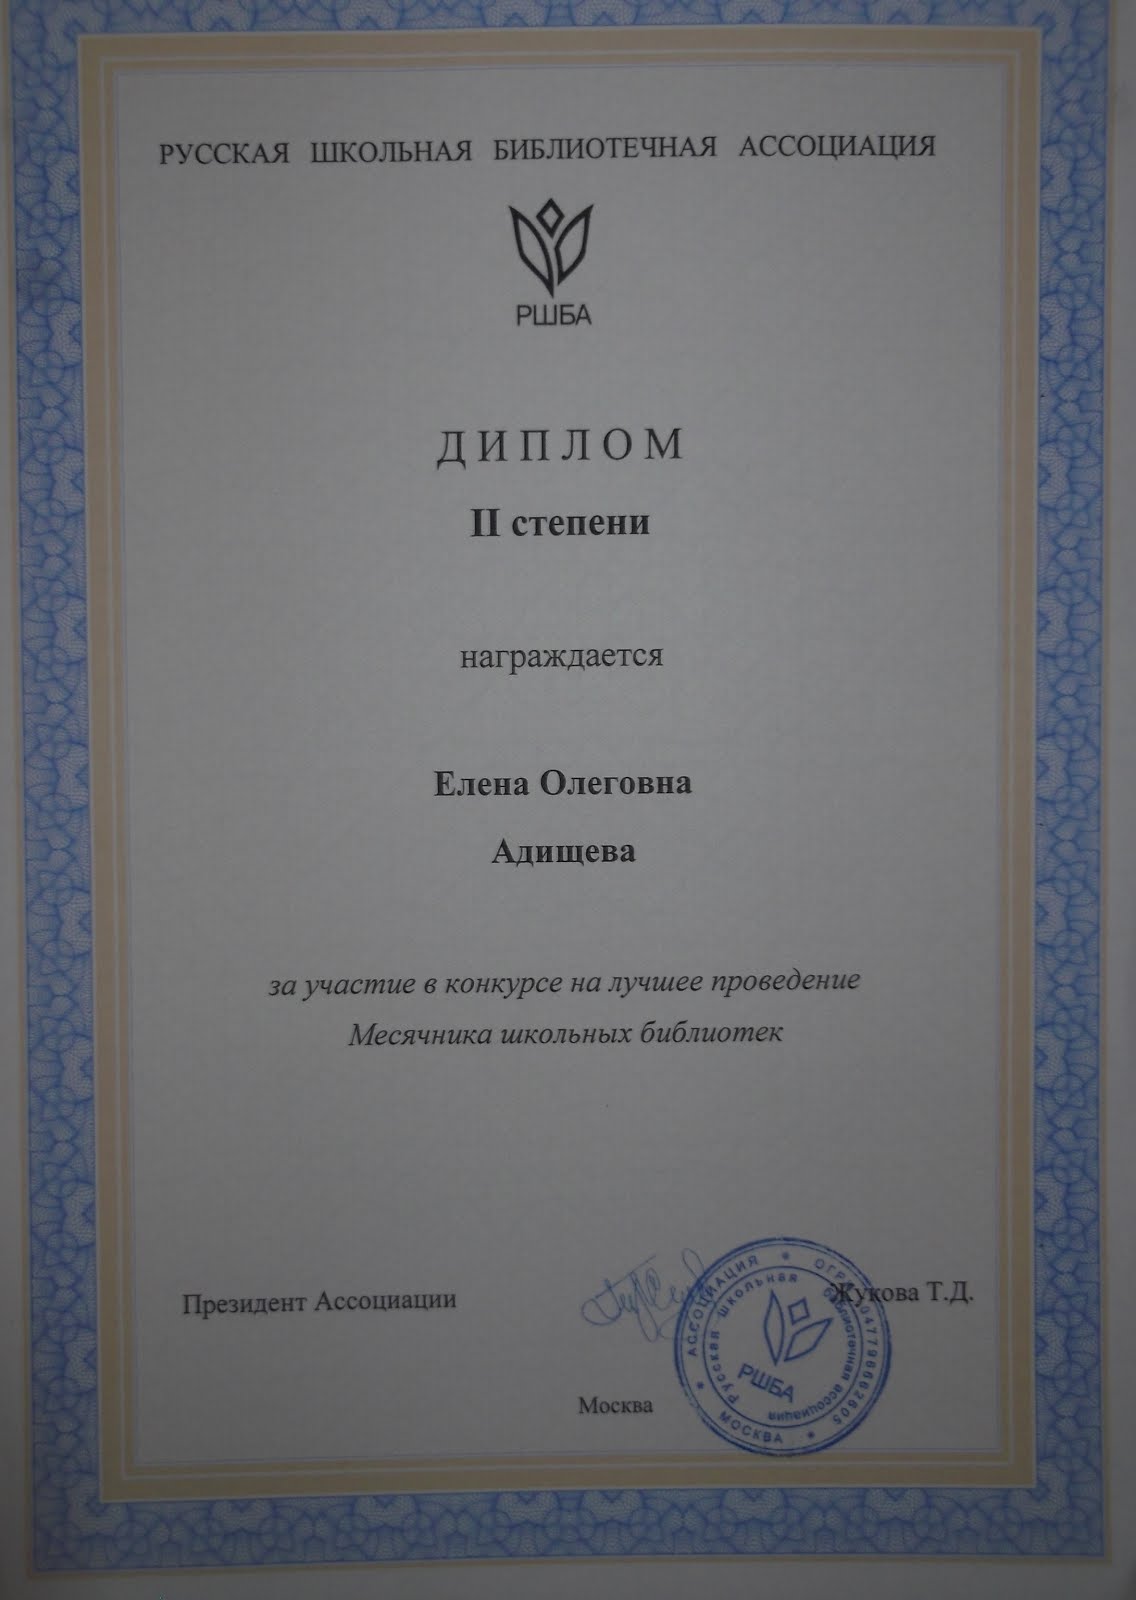 Победитель ММШБ-2016